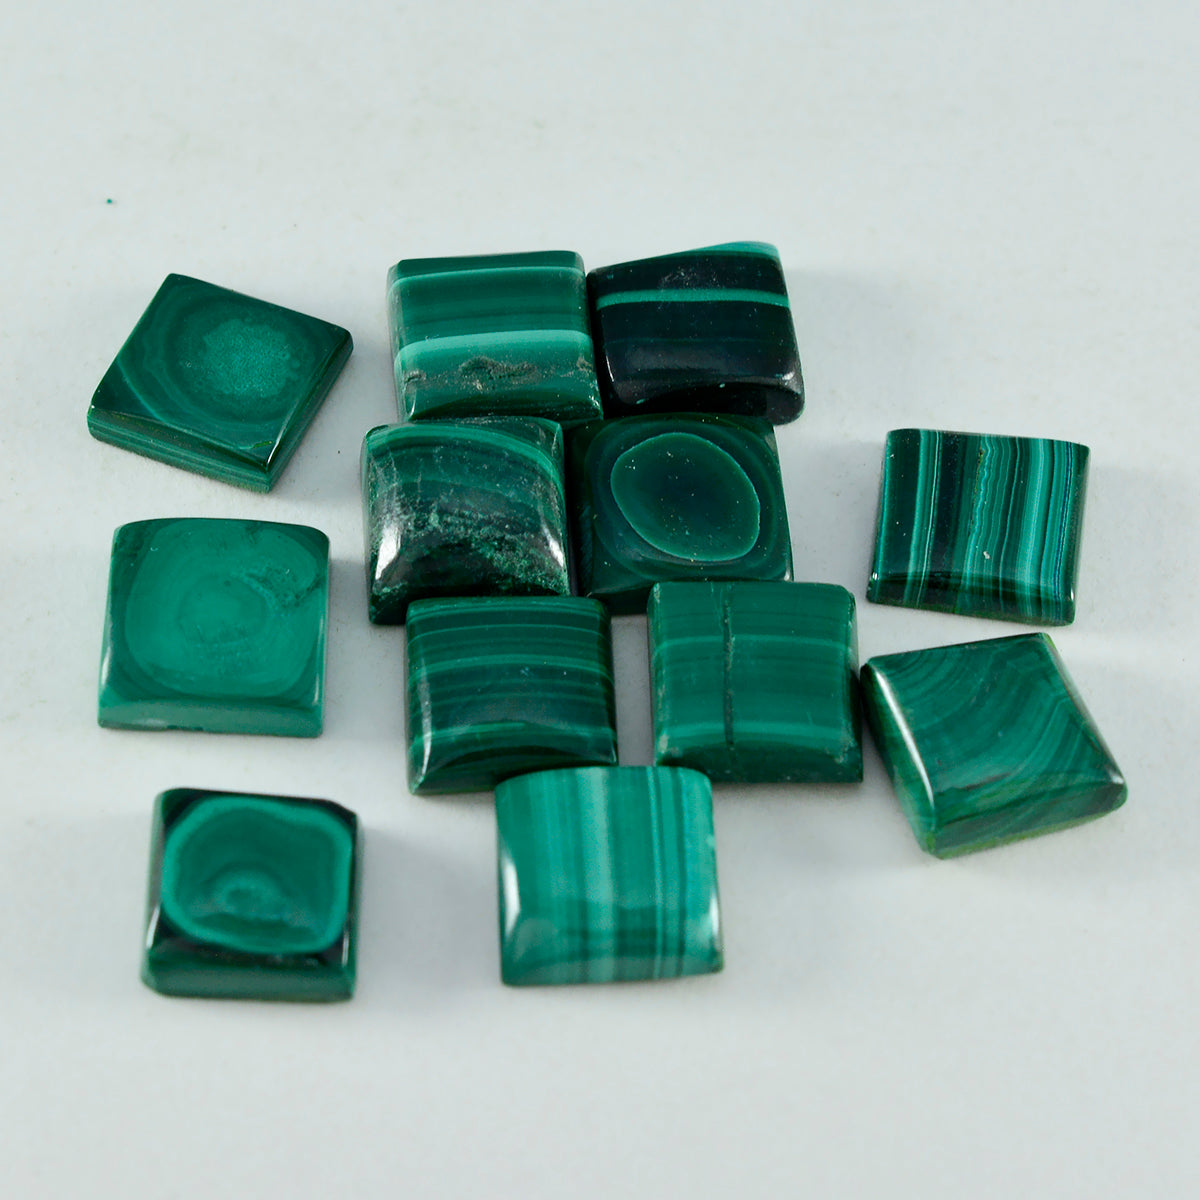 Riyogems 1PC Green Malachite Cabochon 8x8 mm Square Shape cute Quality Stone